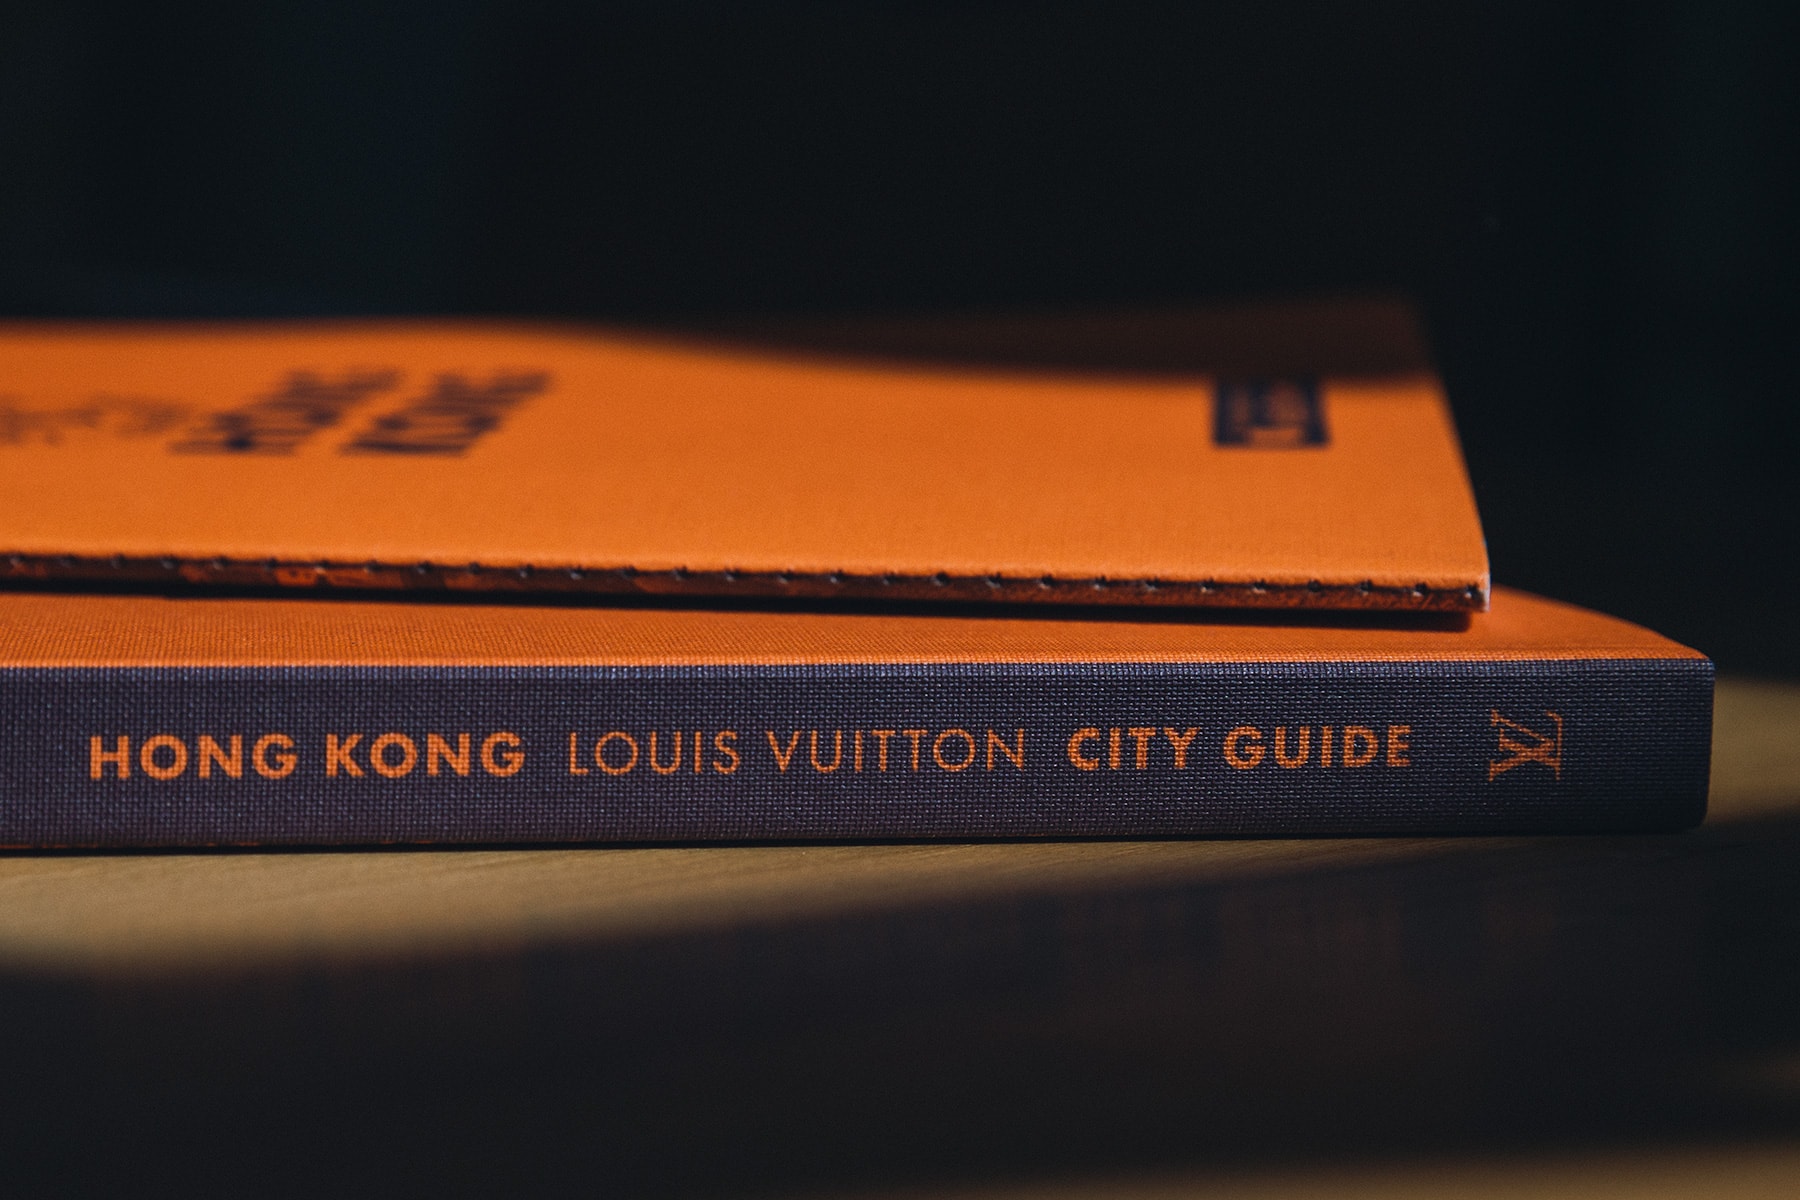 louis vuitton 2017 hong kong city guide